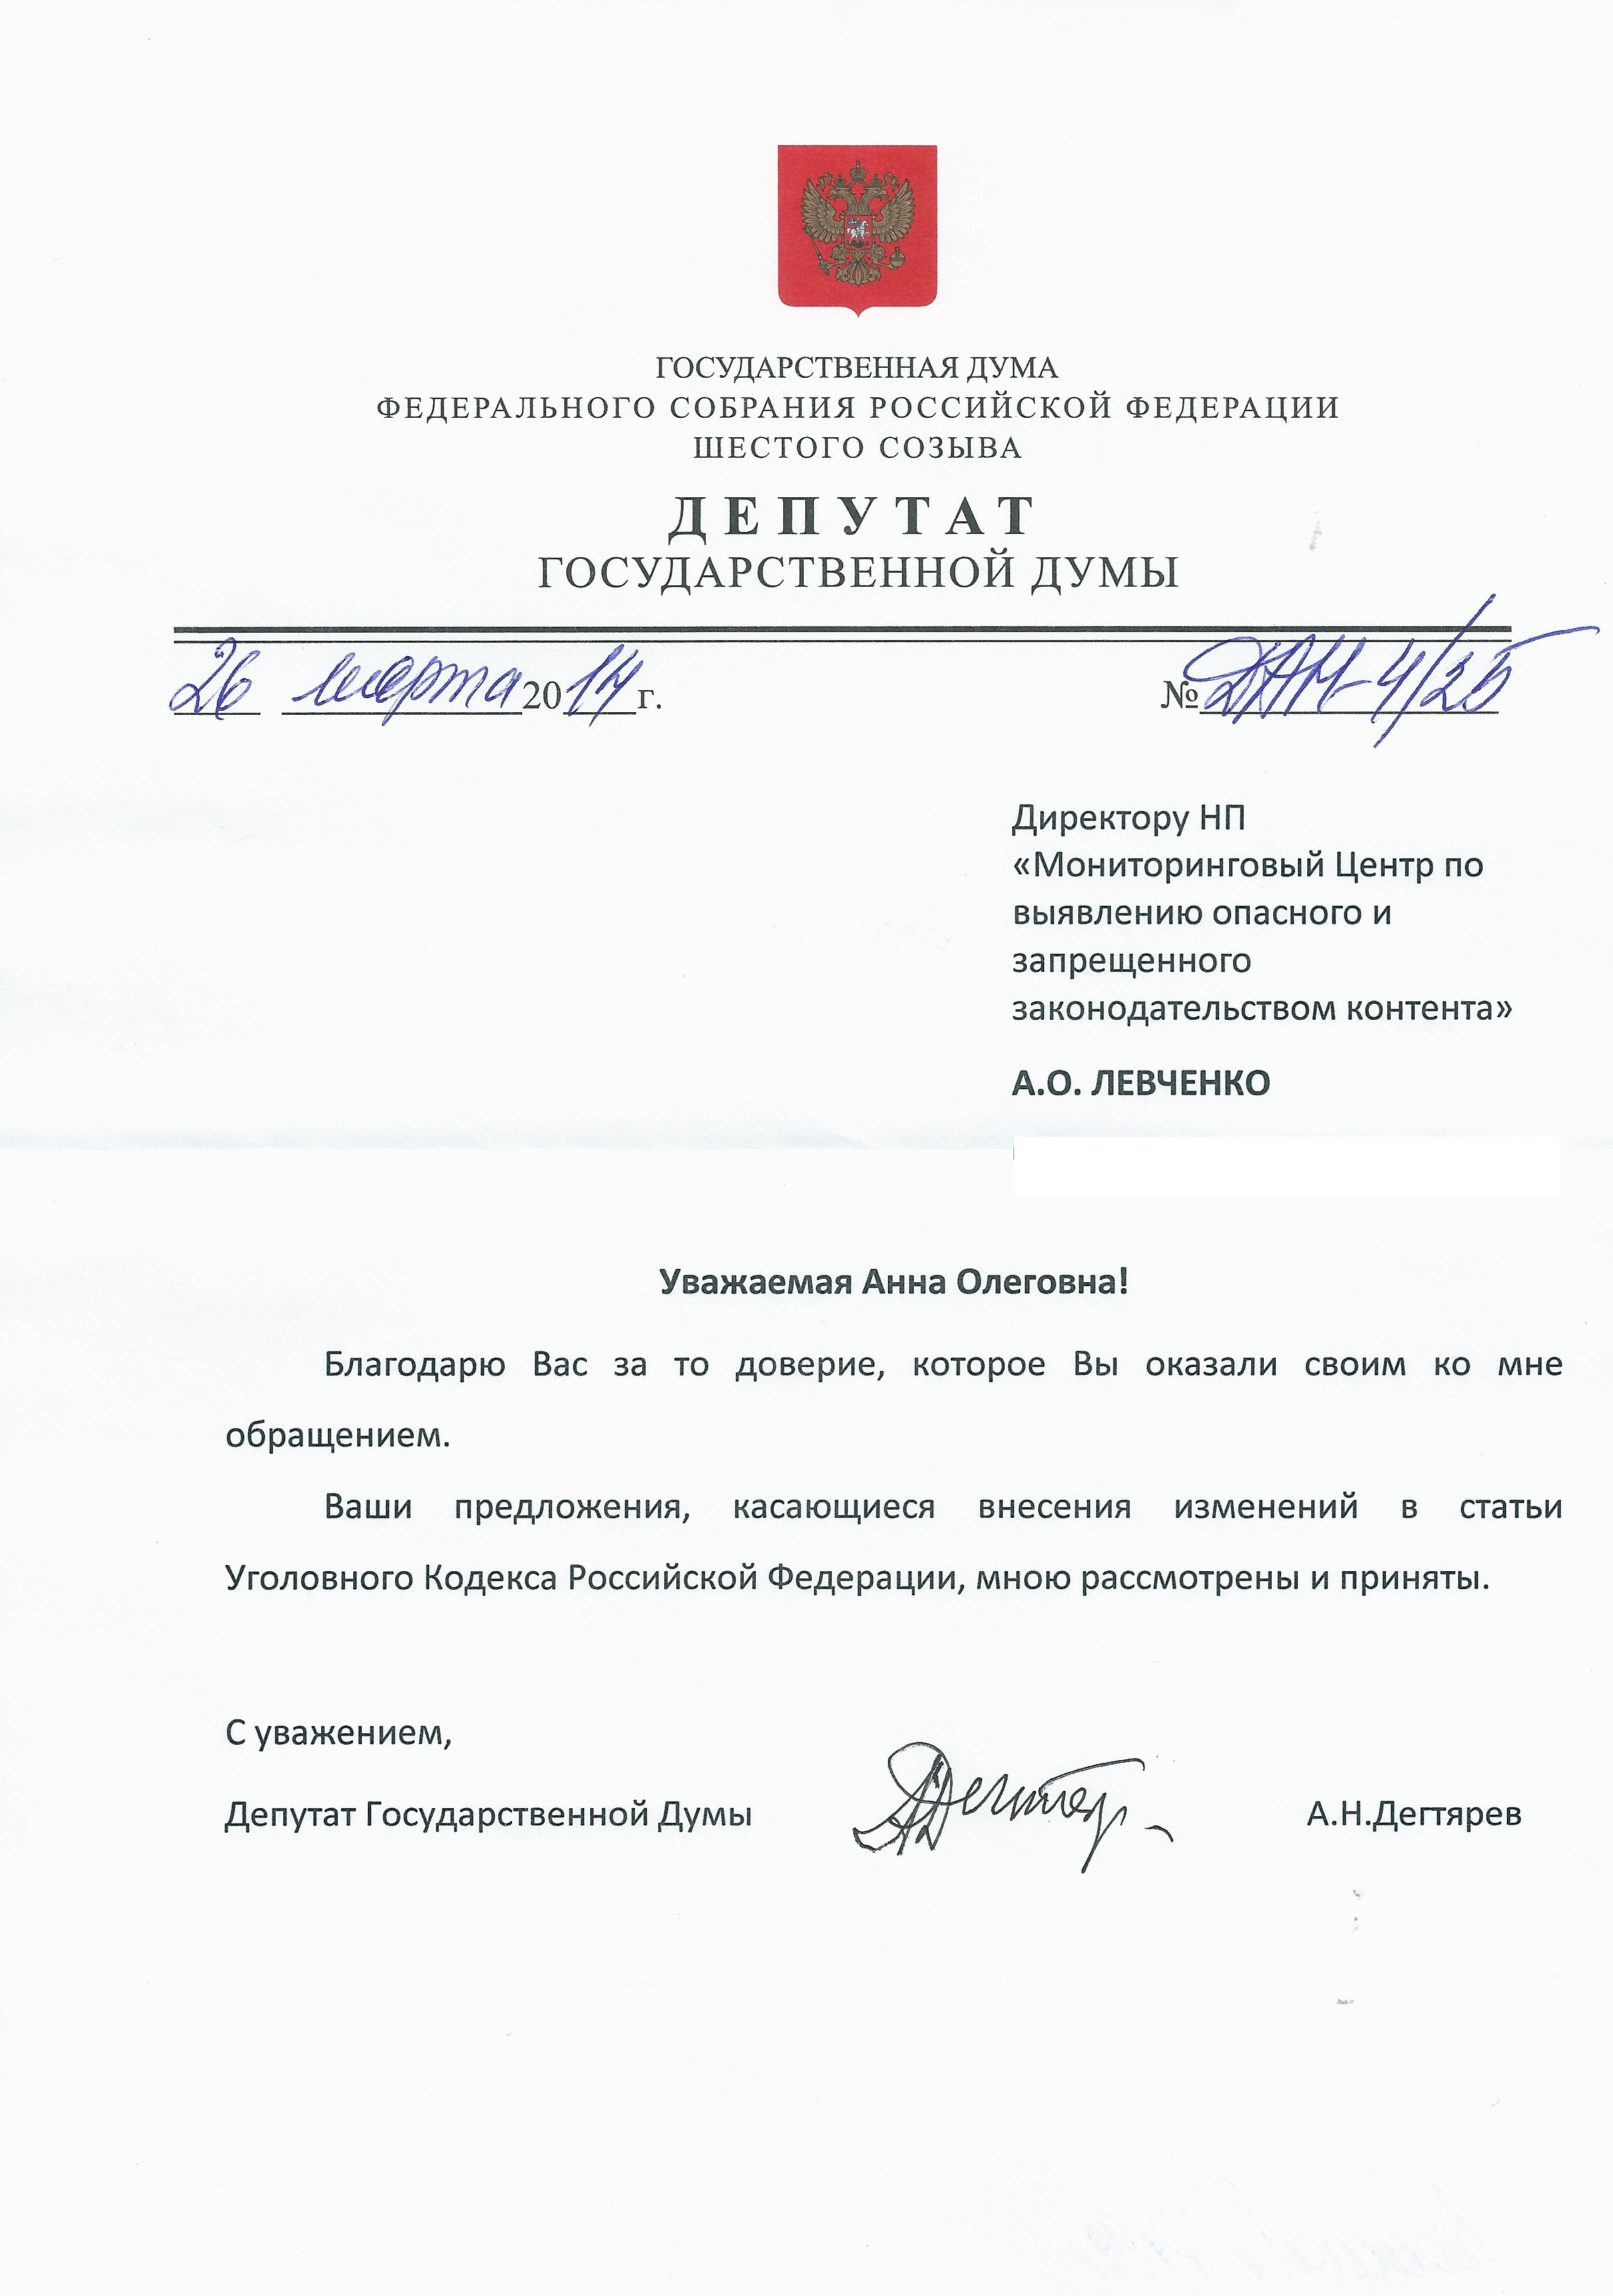 Депутат Государственной Думы Дегтярев А.Н. полностью поддержал наши предложения по ужесточению наказания за детоубийство. 